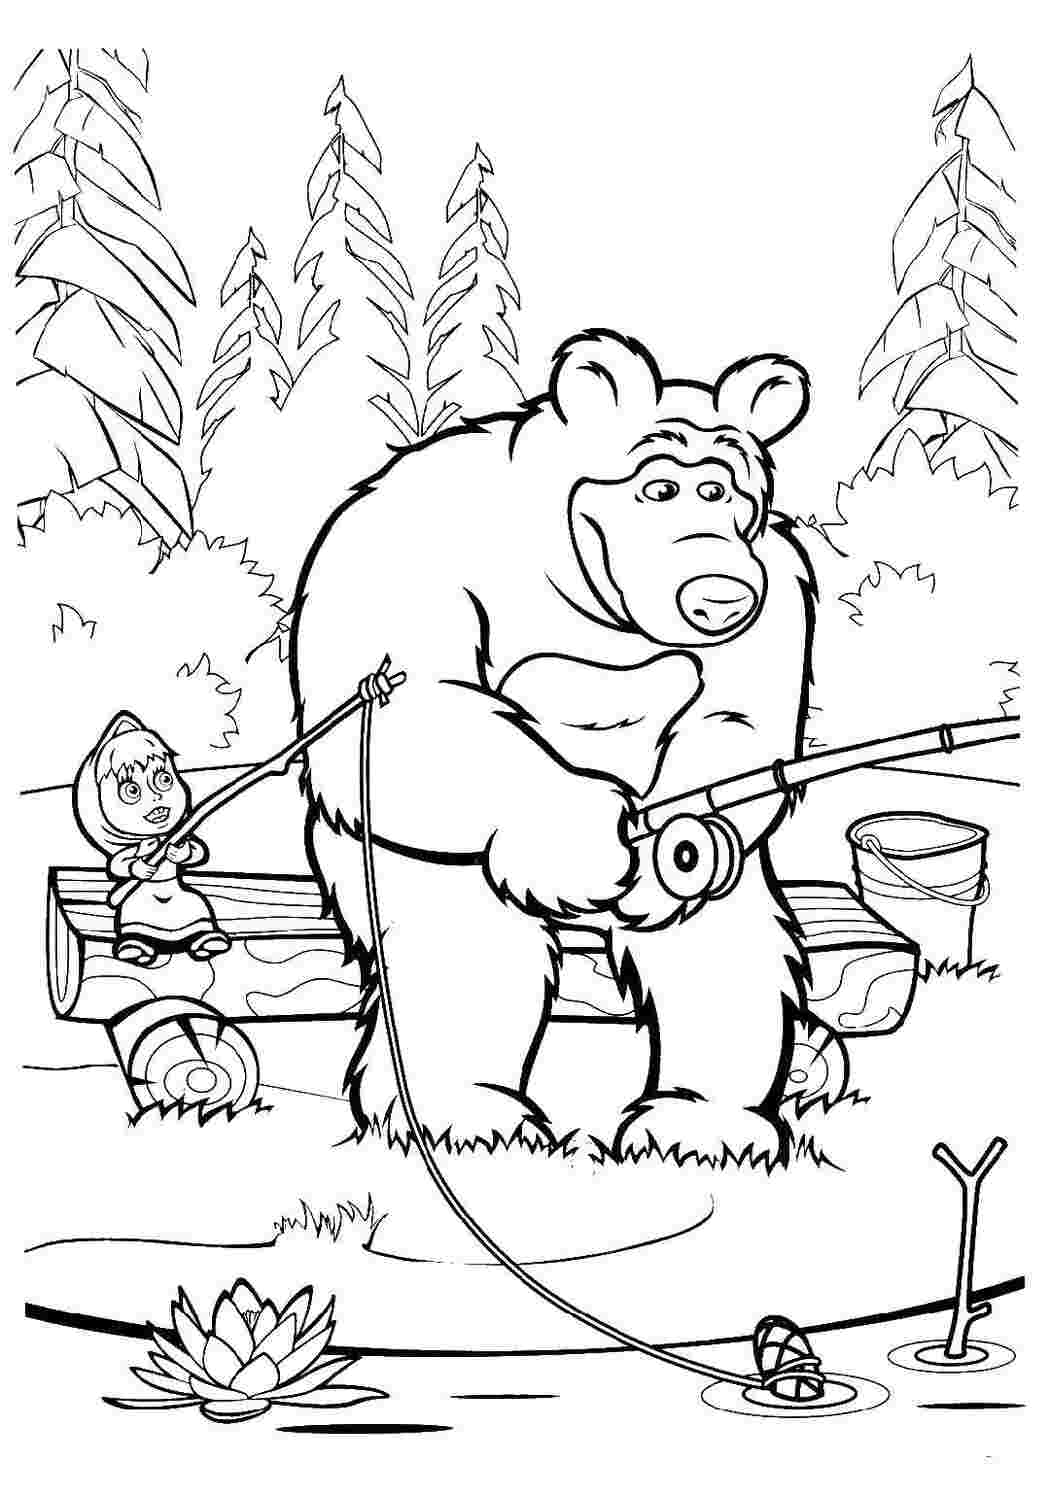 Раскраска Маша и Медведь - распечатать и скачать бесплатно